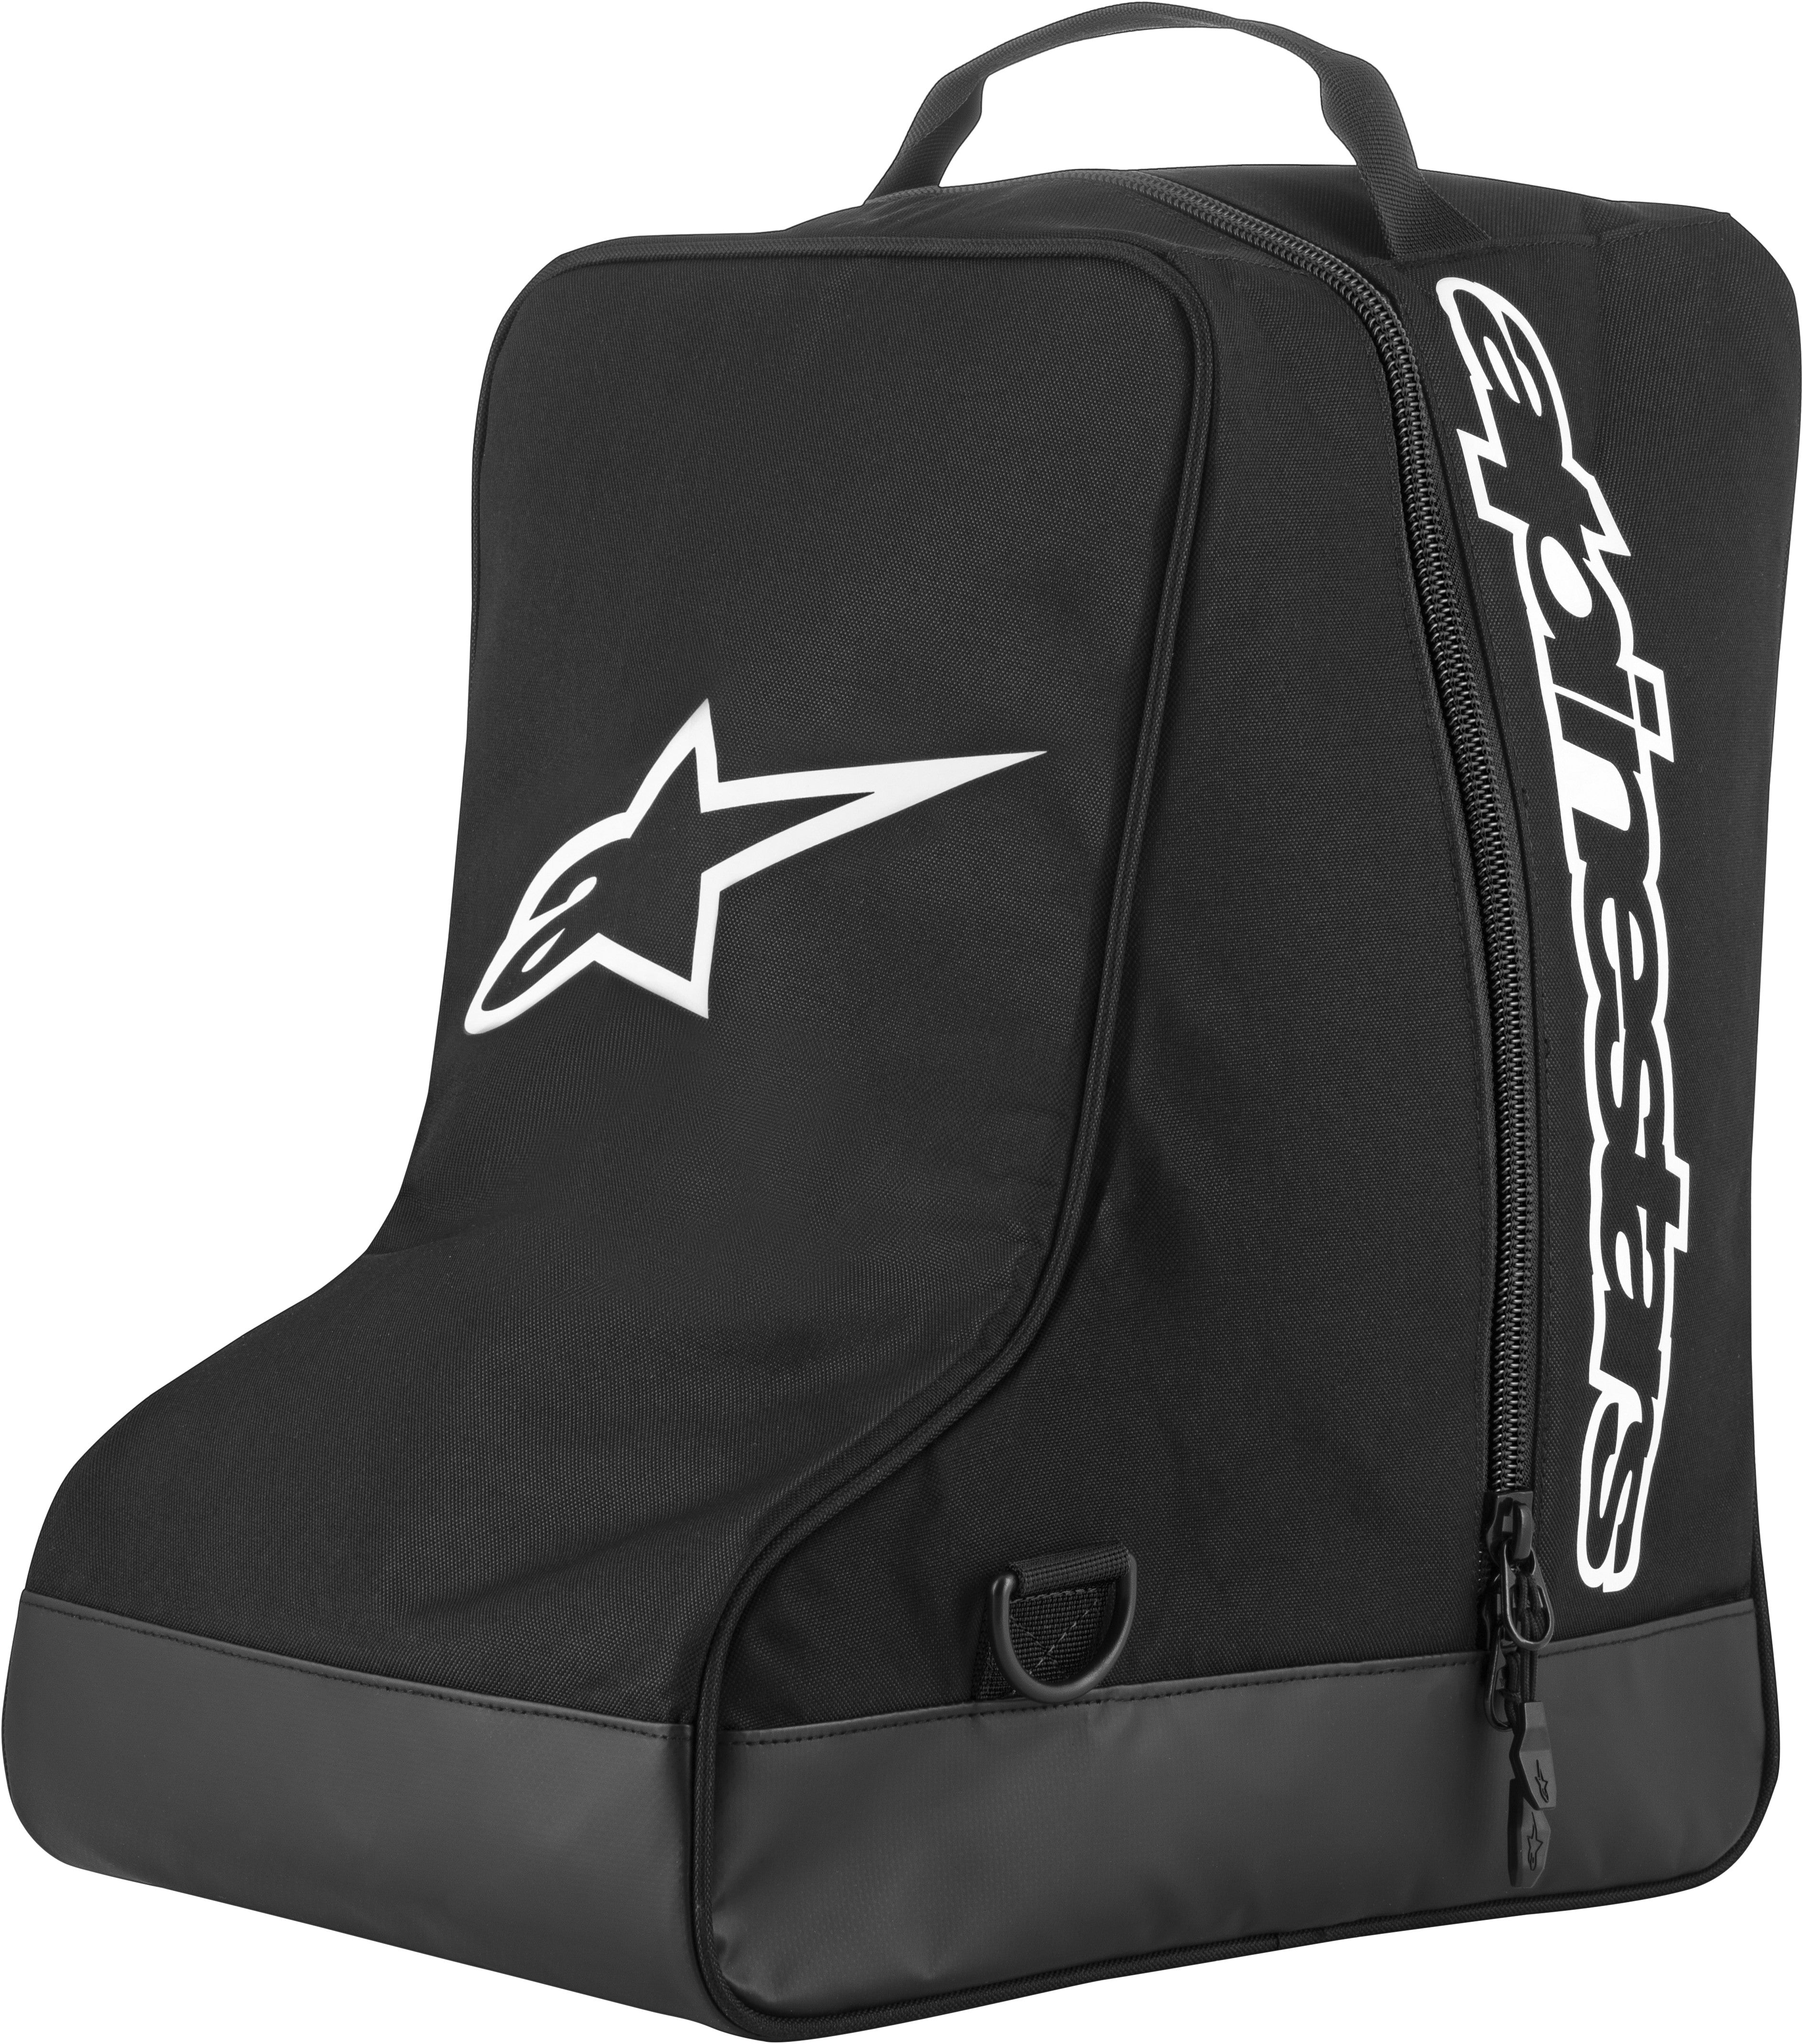 Alpinestars Boot Bag Black/White  6106319-12-Os